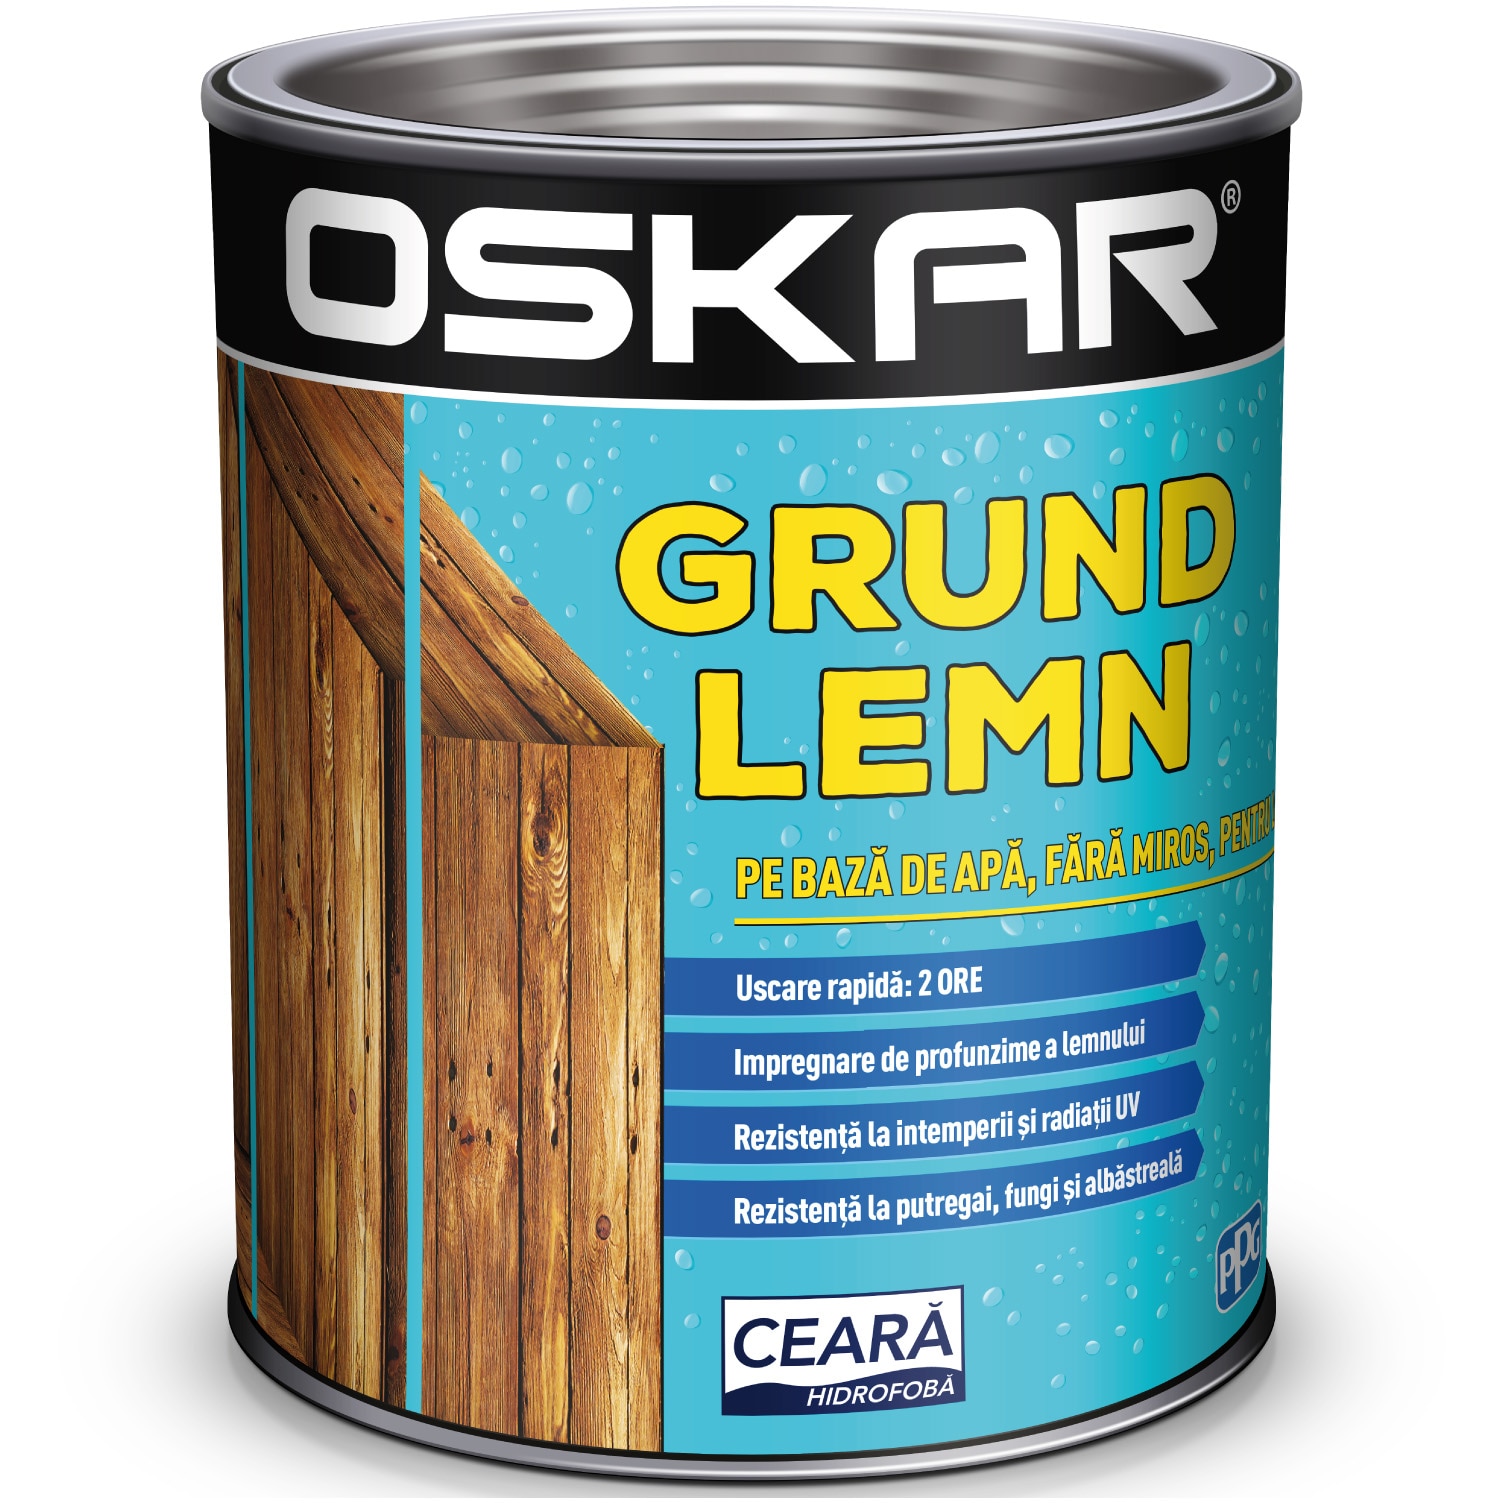 comment suffering vein Grund pentru lemn pe baza de apa Oskar, 0.75 L - eMAG.ro